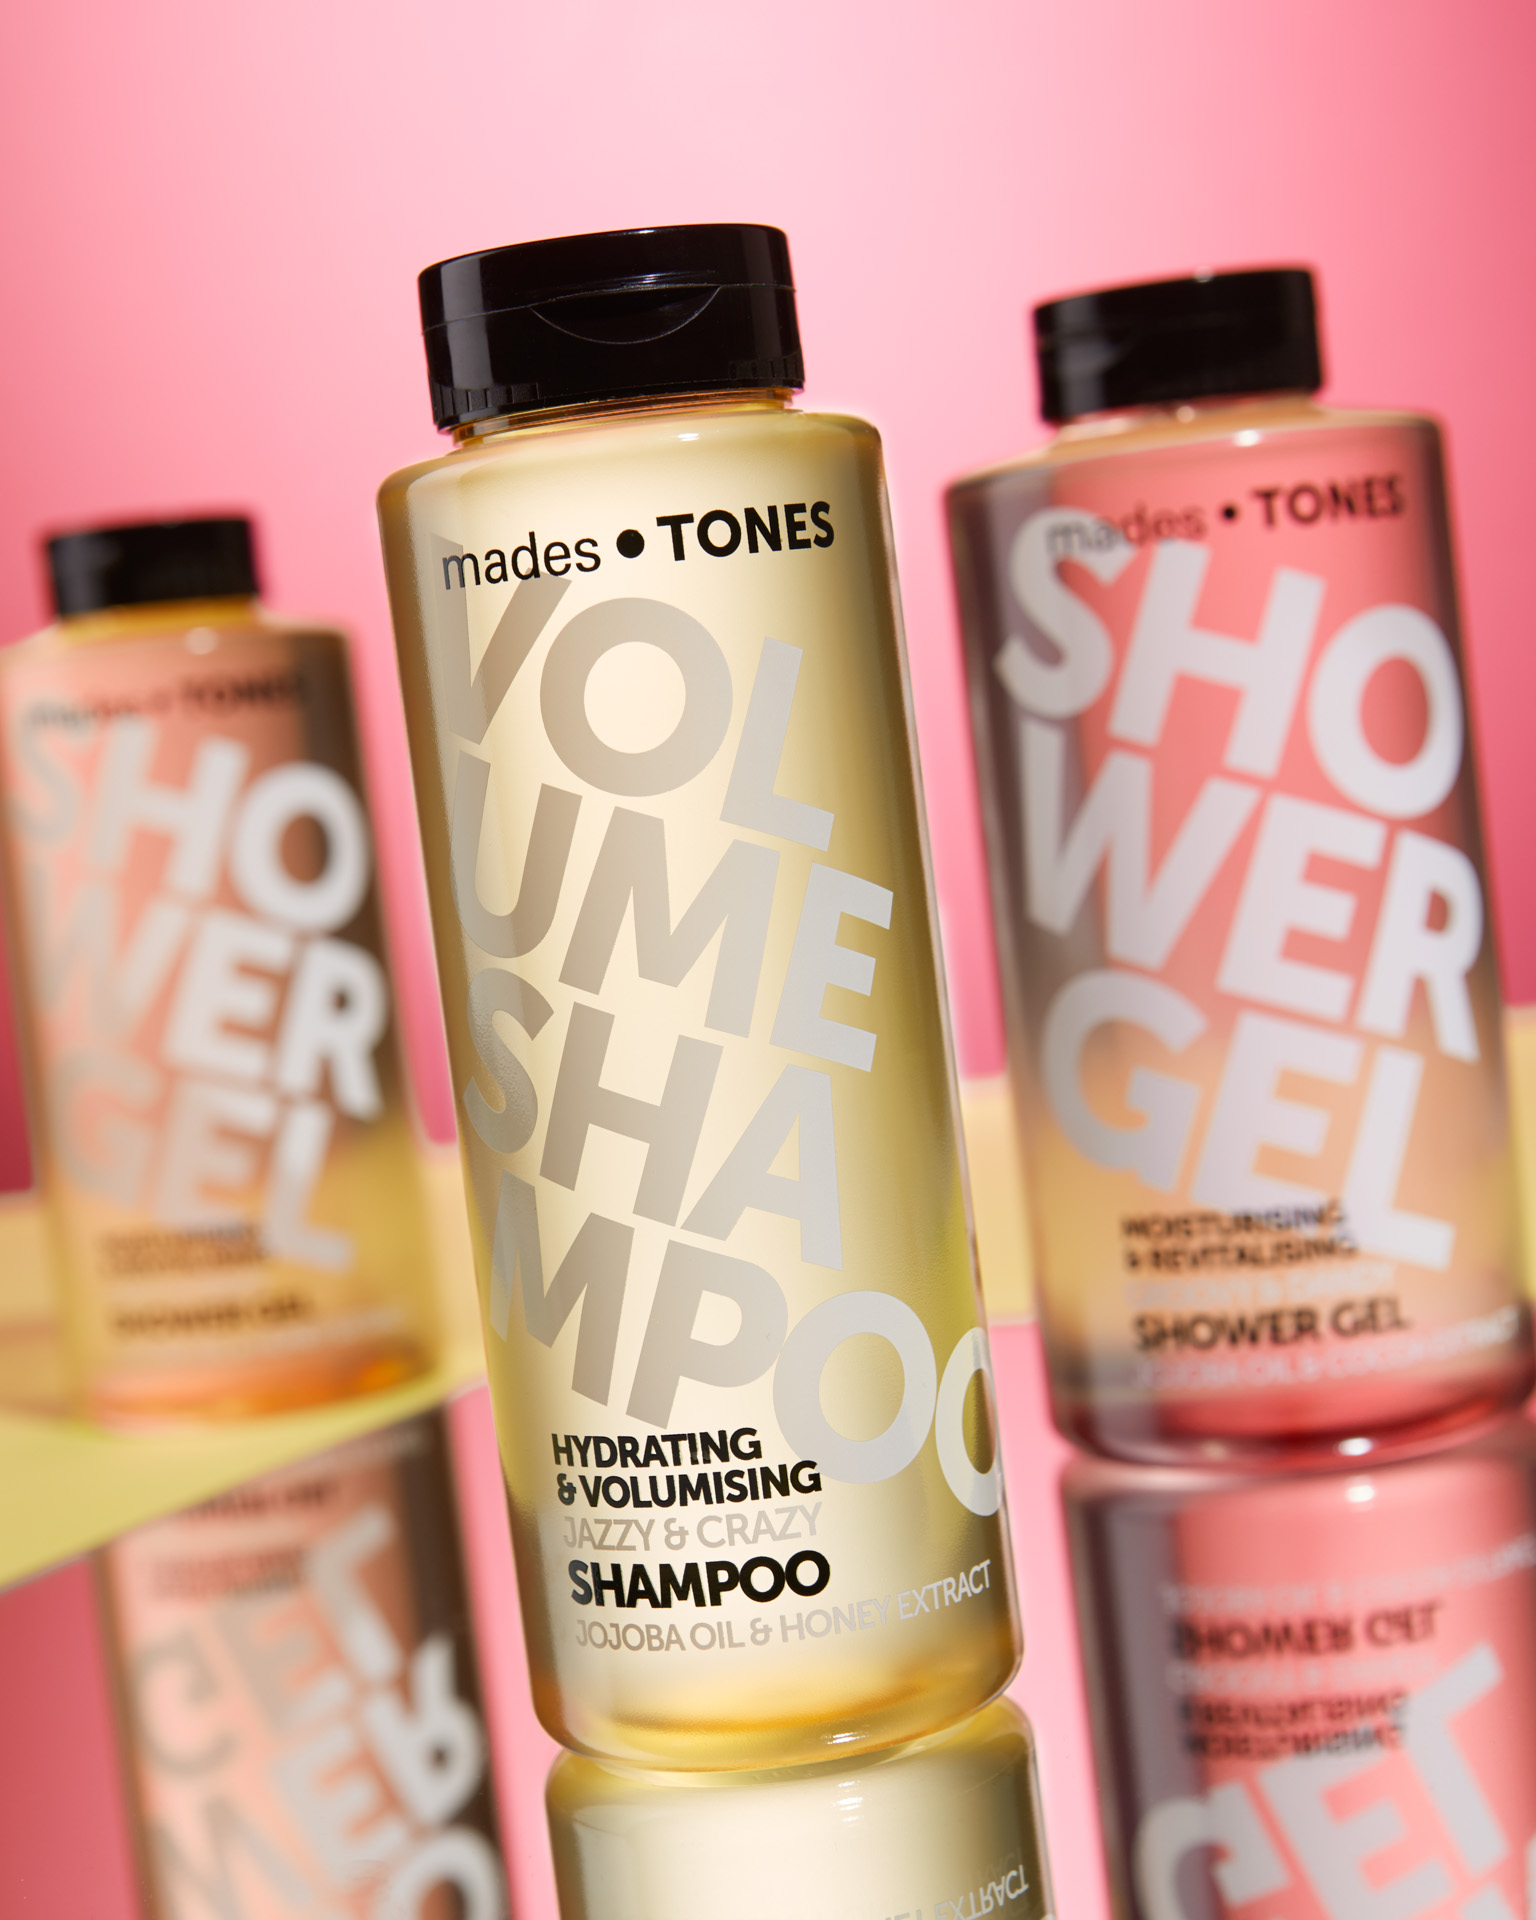 Product foto van shampoo en douche producten met roze en gele kleuren